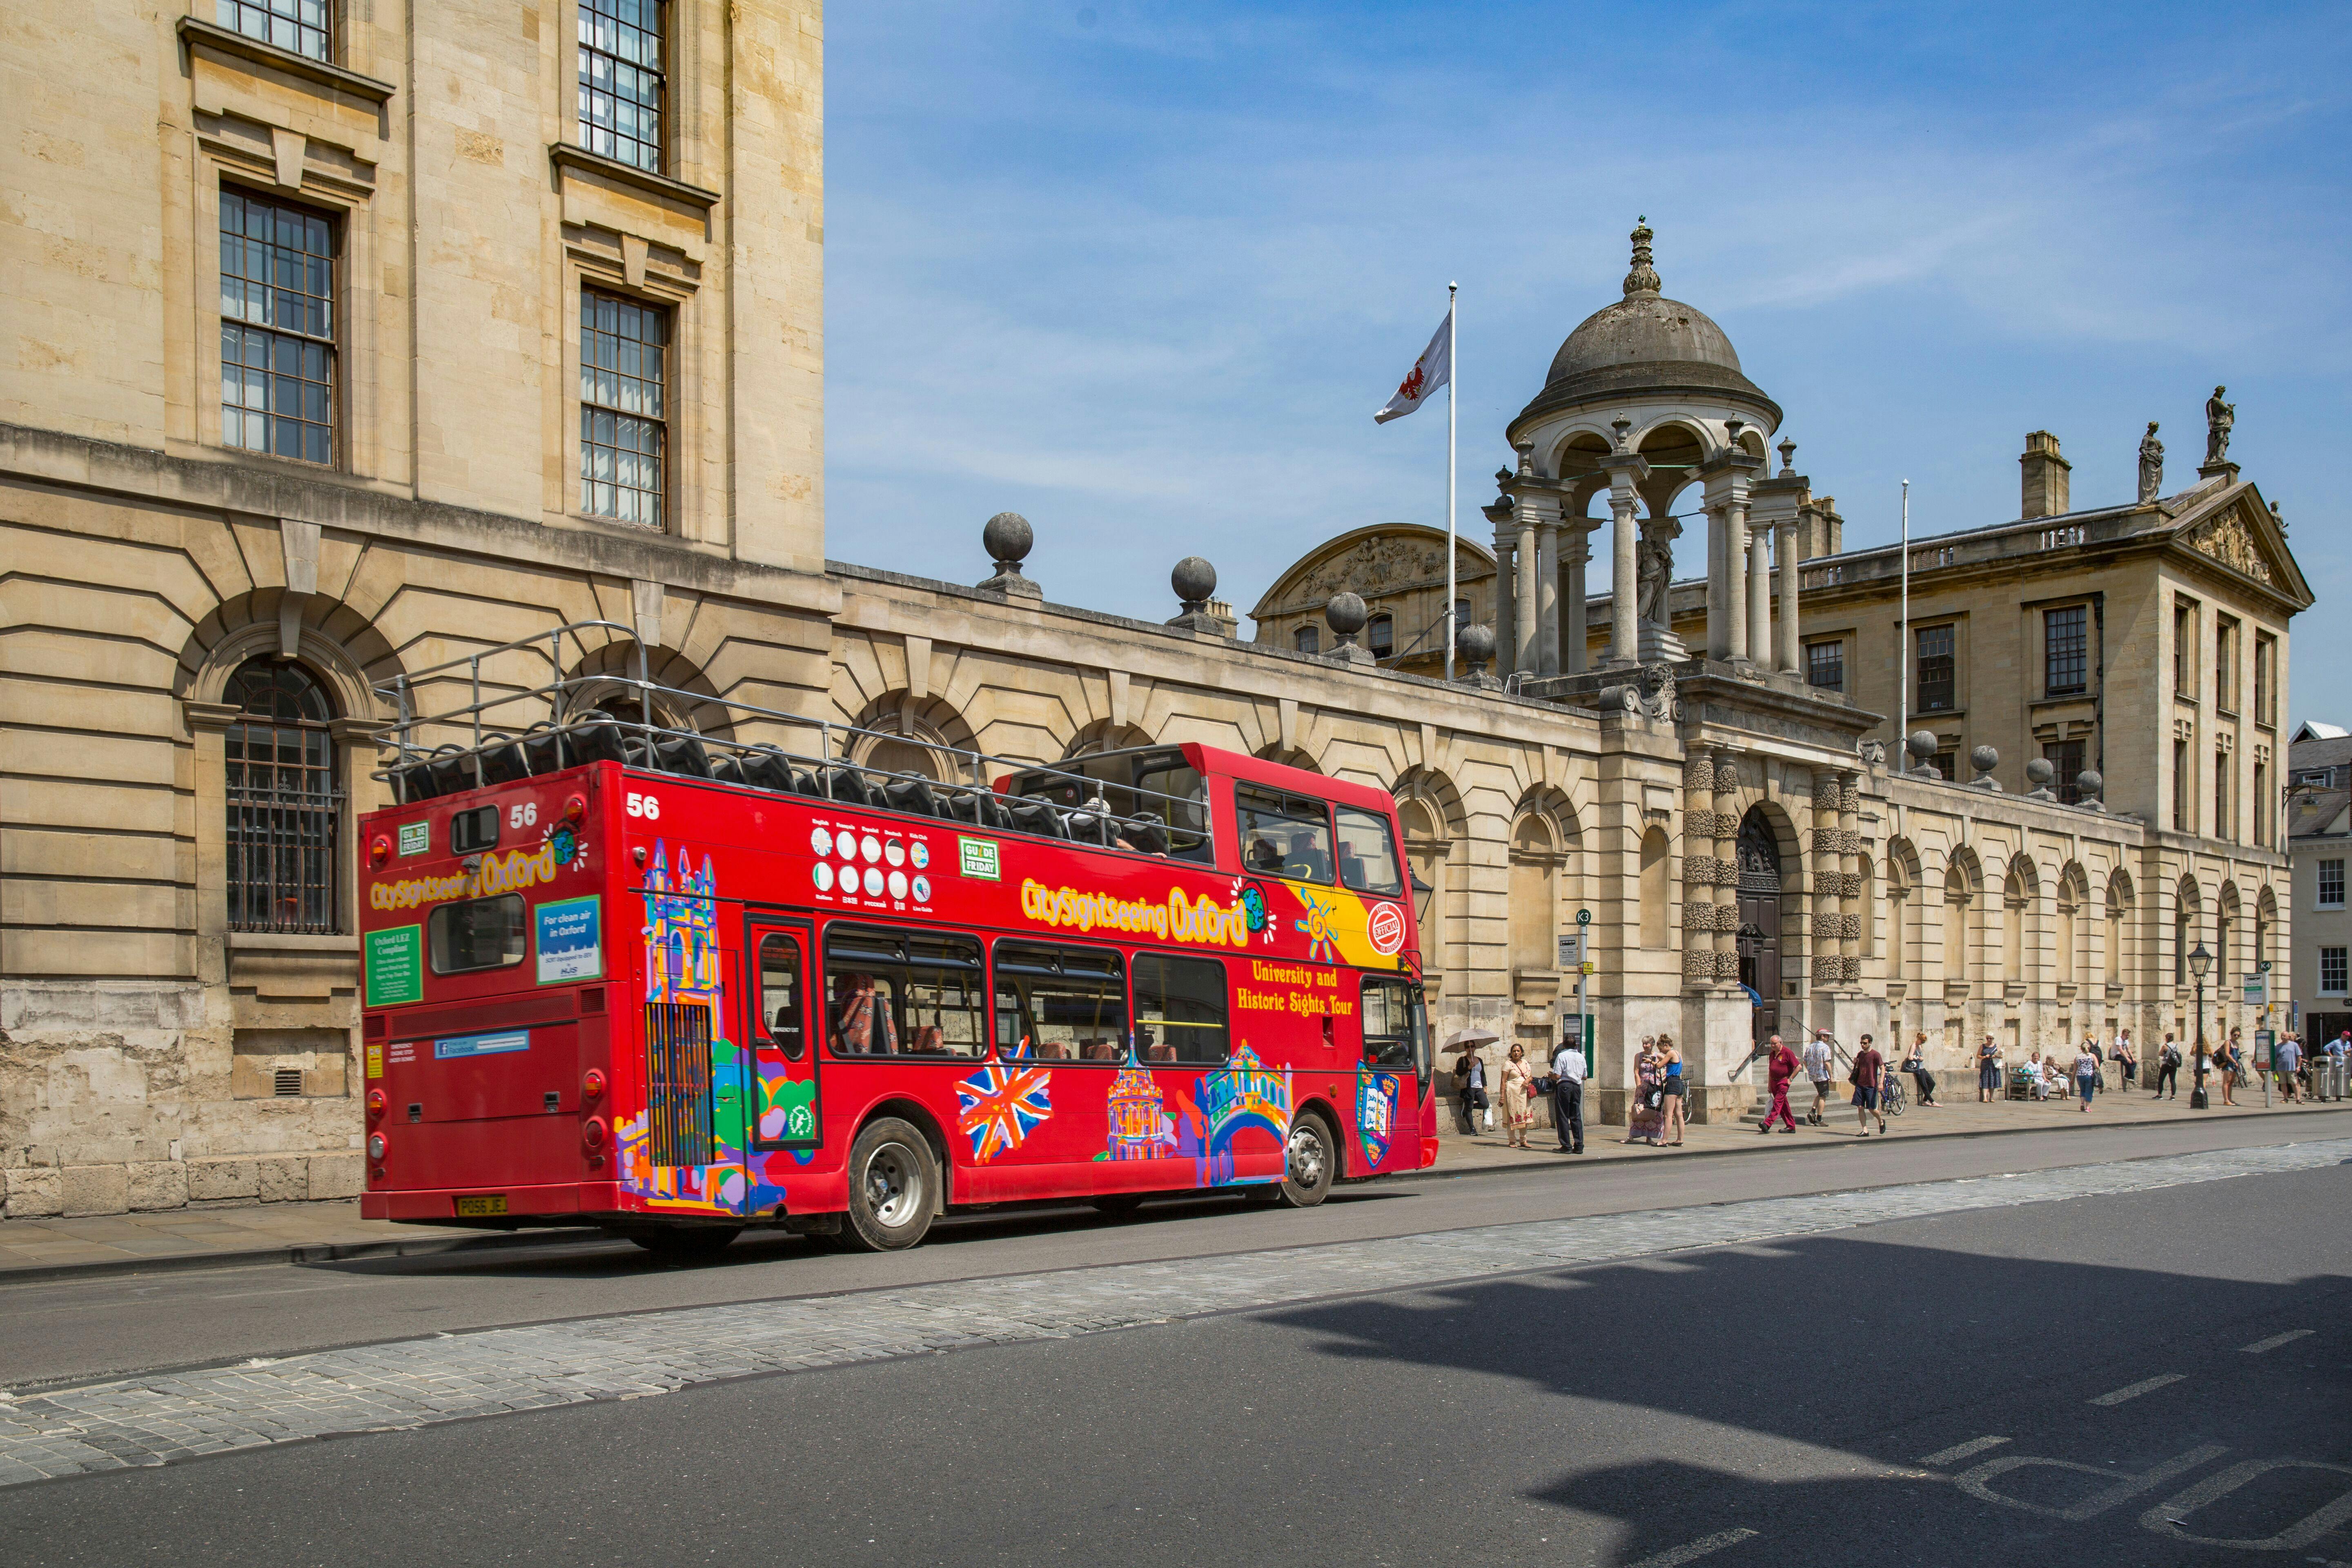 Tour en autobús turístico City Sightseeing por Oxford con la Torre Carfax opcional